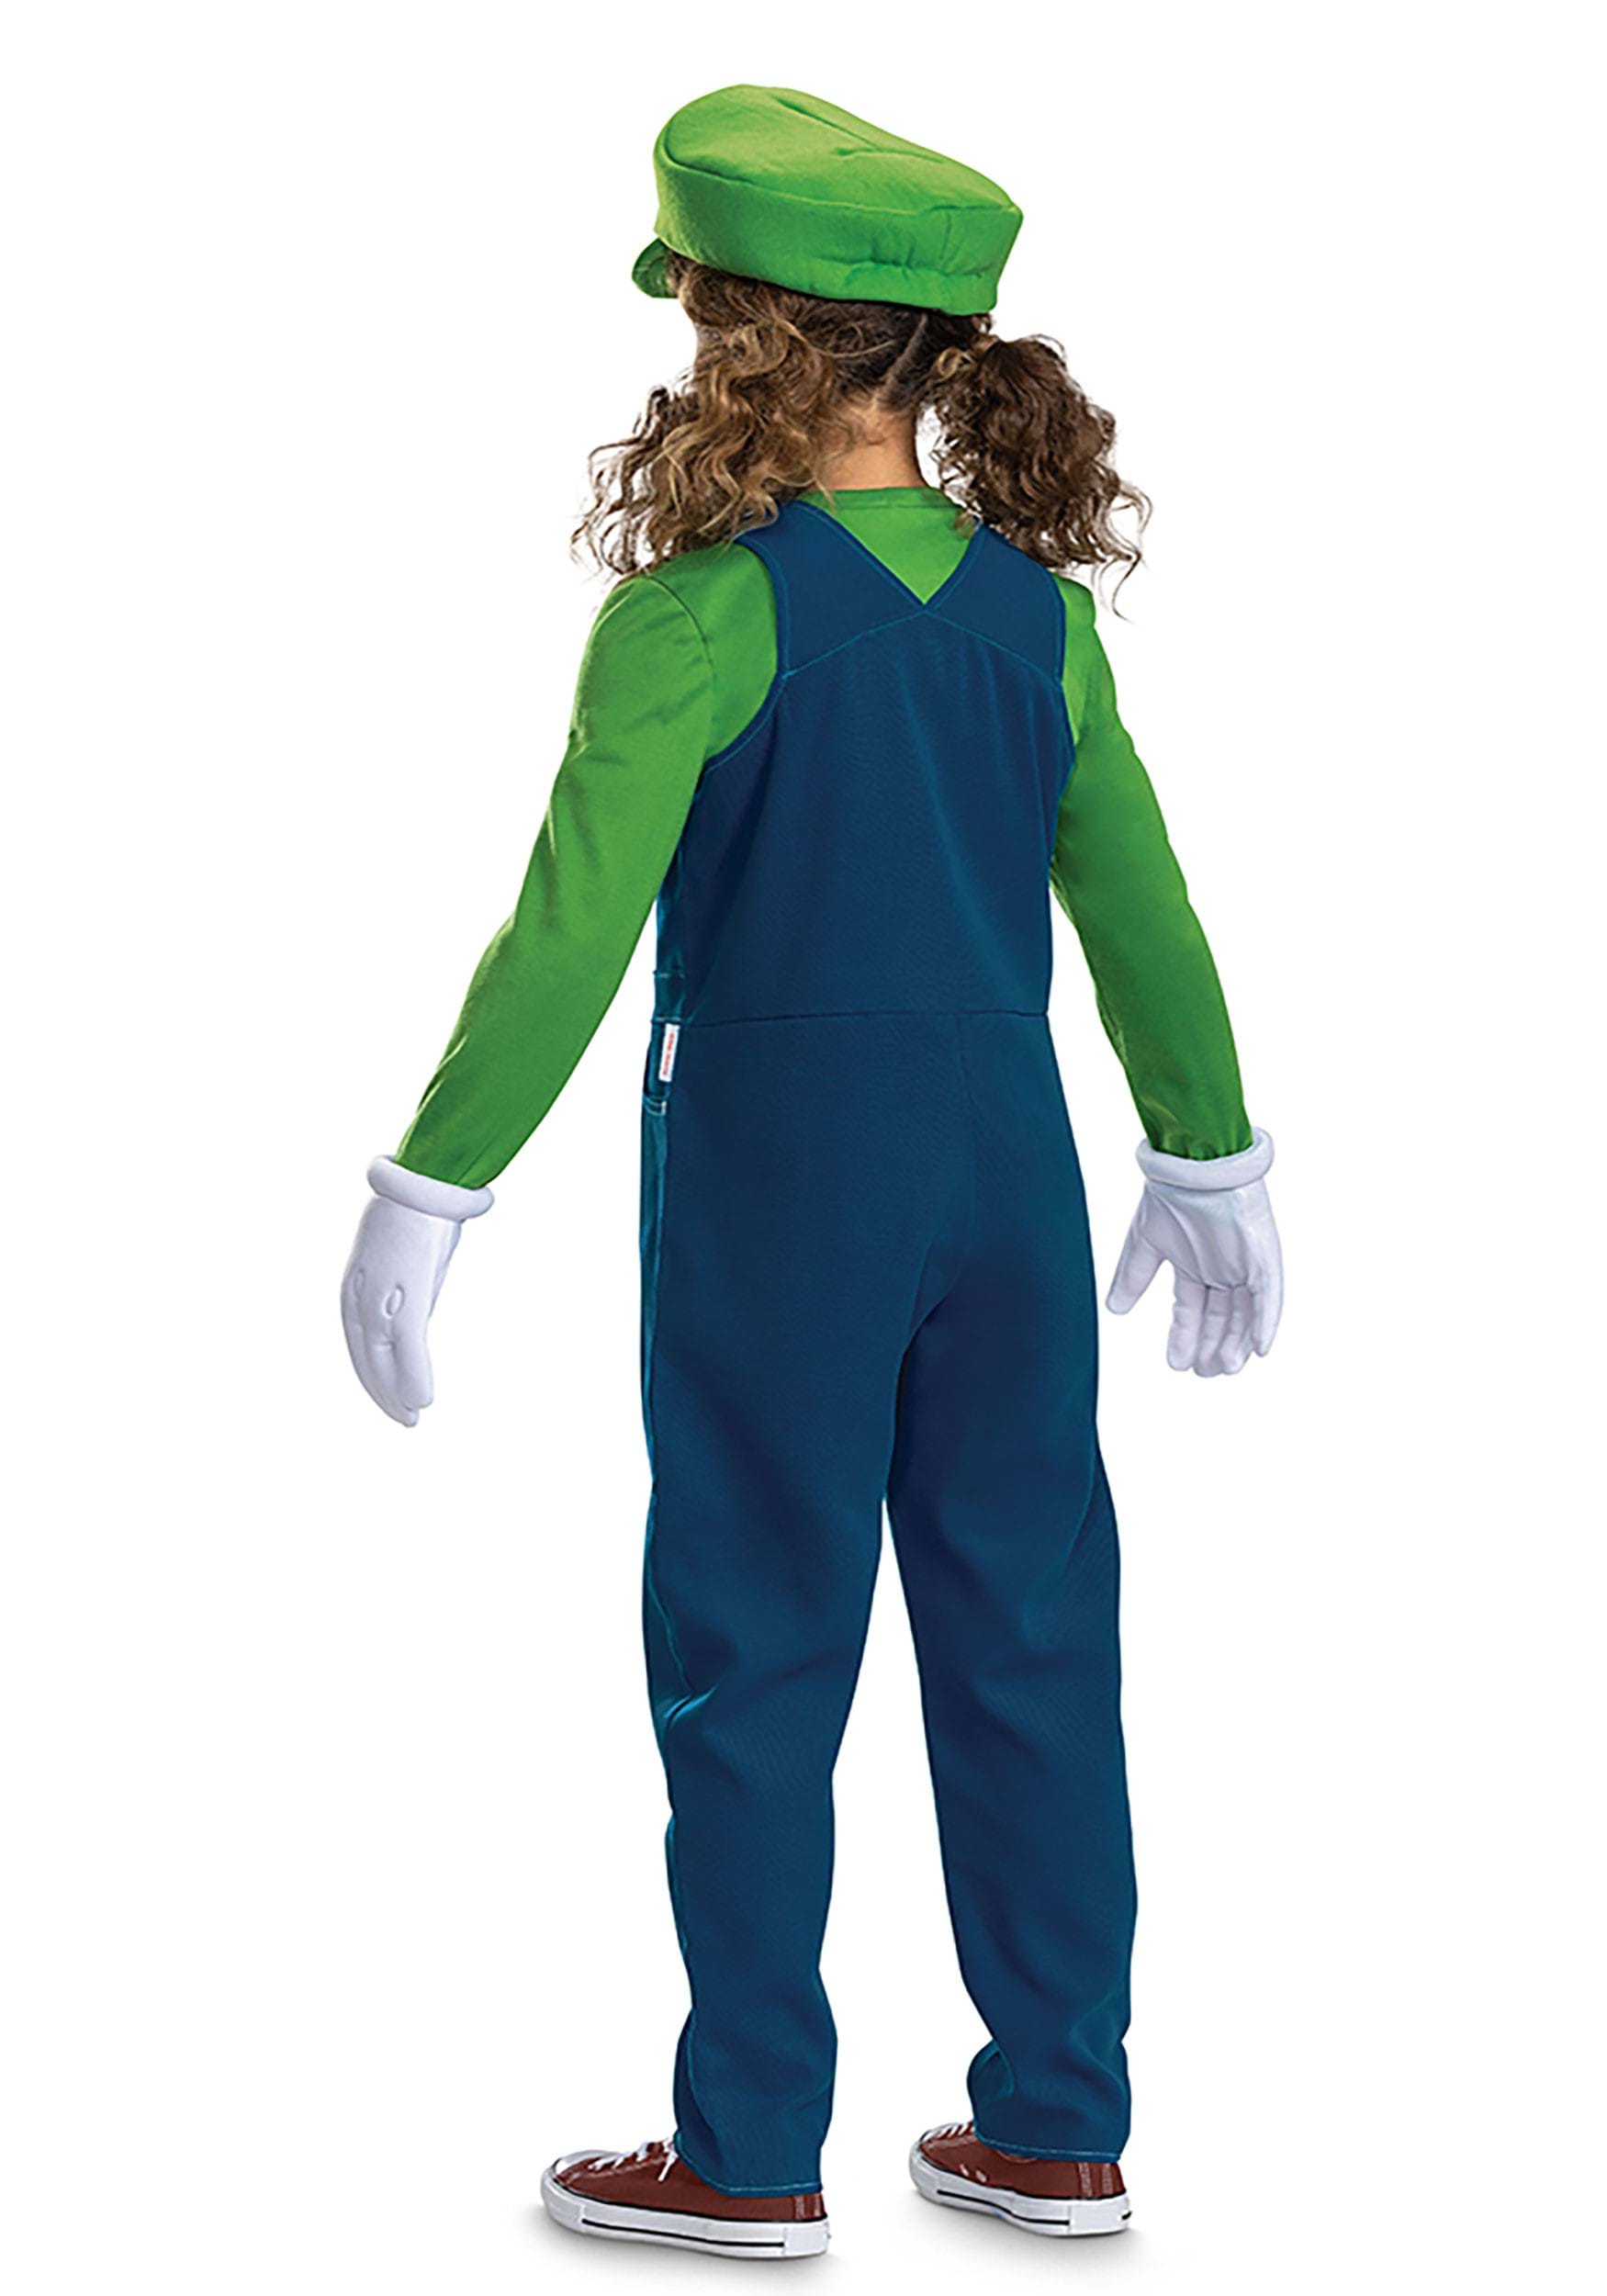 Kid's Super Mario Bros Premium Luigi Fancy Dress Costume